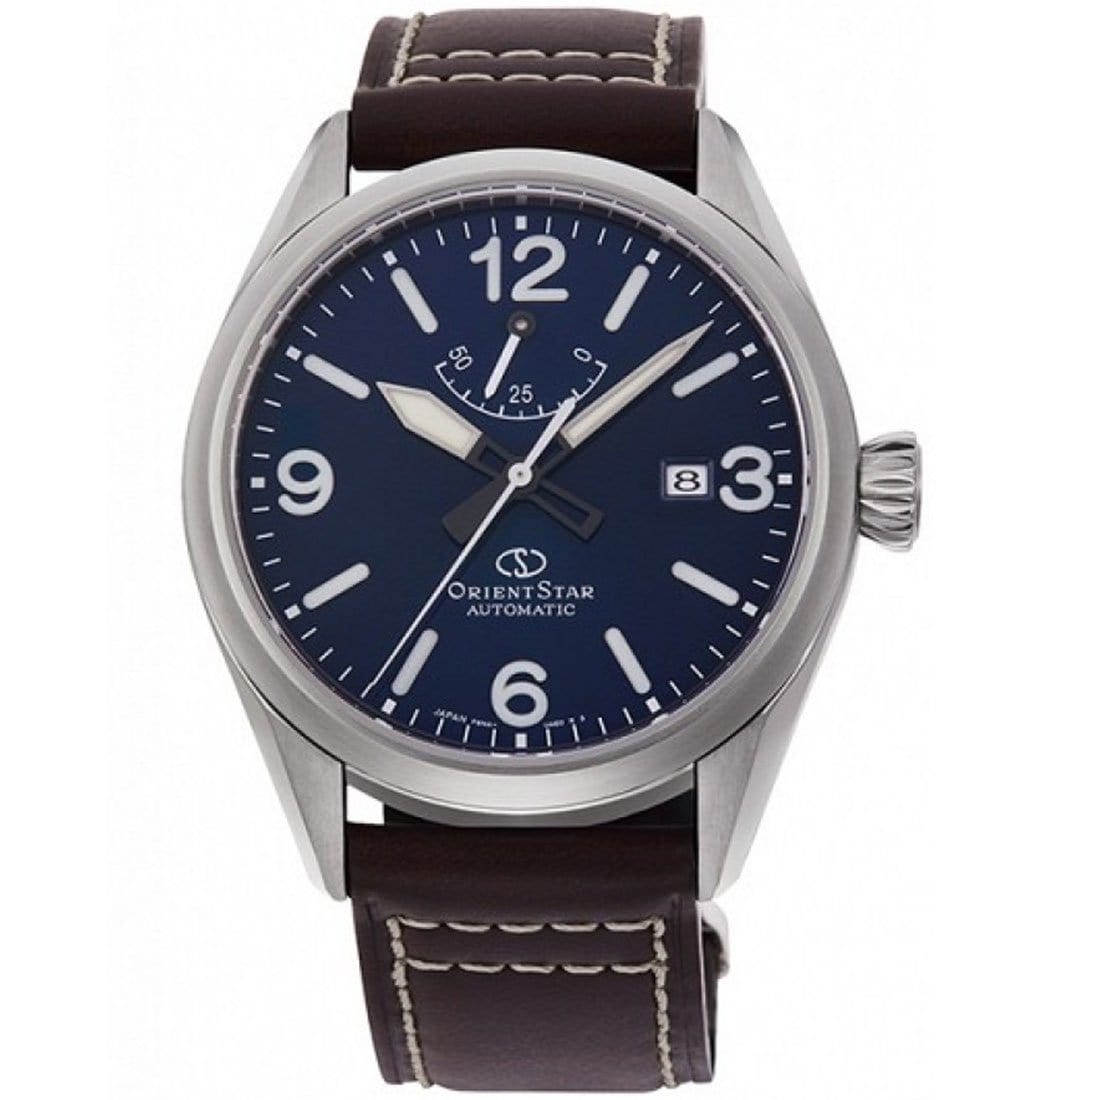 Orient Star RE-AU0204L RE-AU0204L00B Mens Automatic Leather Watch